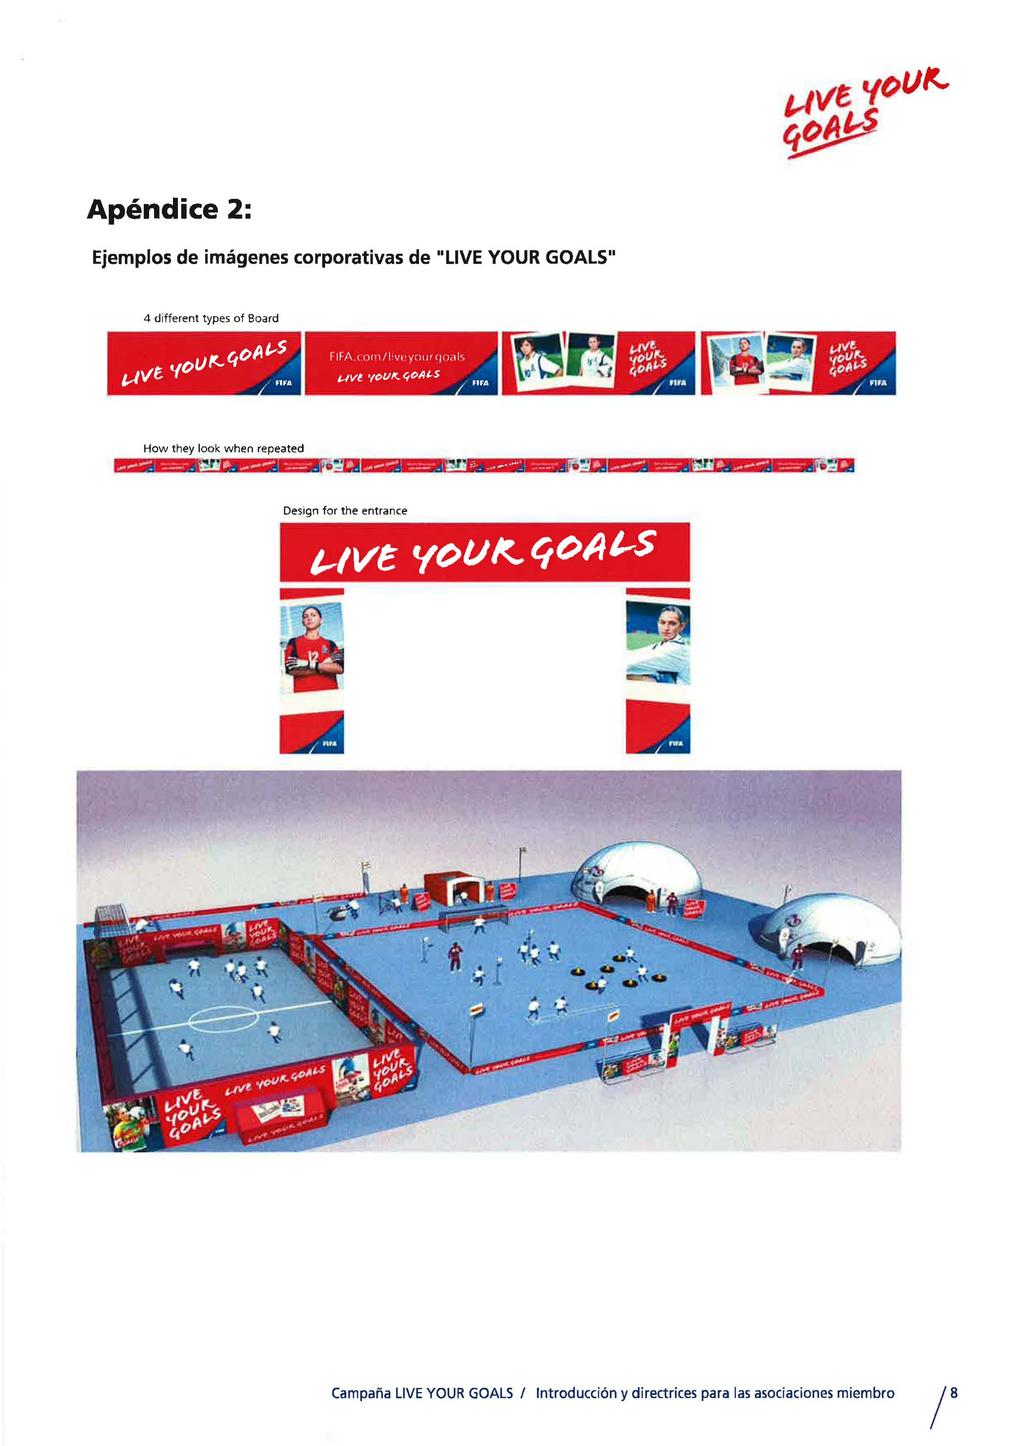 Apendice 2: Ejemplos de imagenes corporativas de "LIVE YOUR GOALS" 4 different types of Board FIFA (olll/l'vl'yoljf(jodl, UVl.